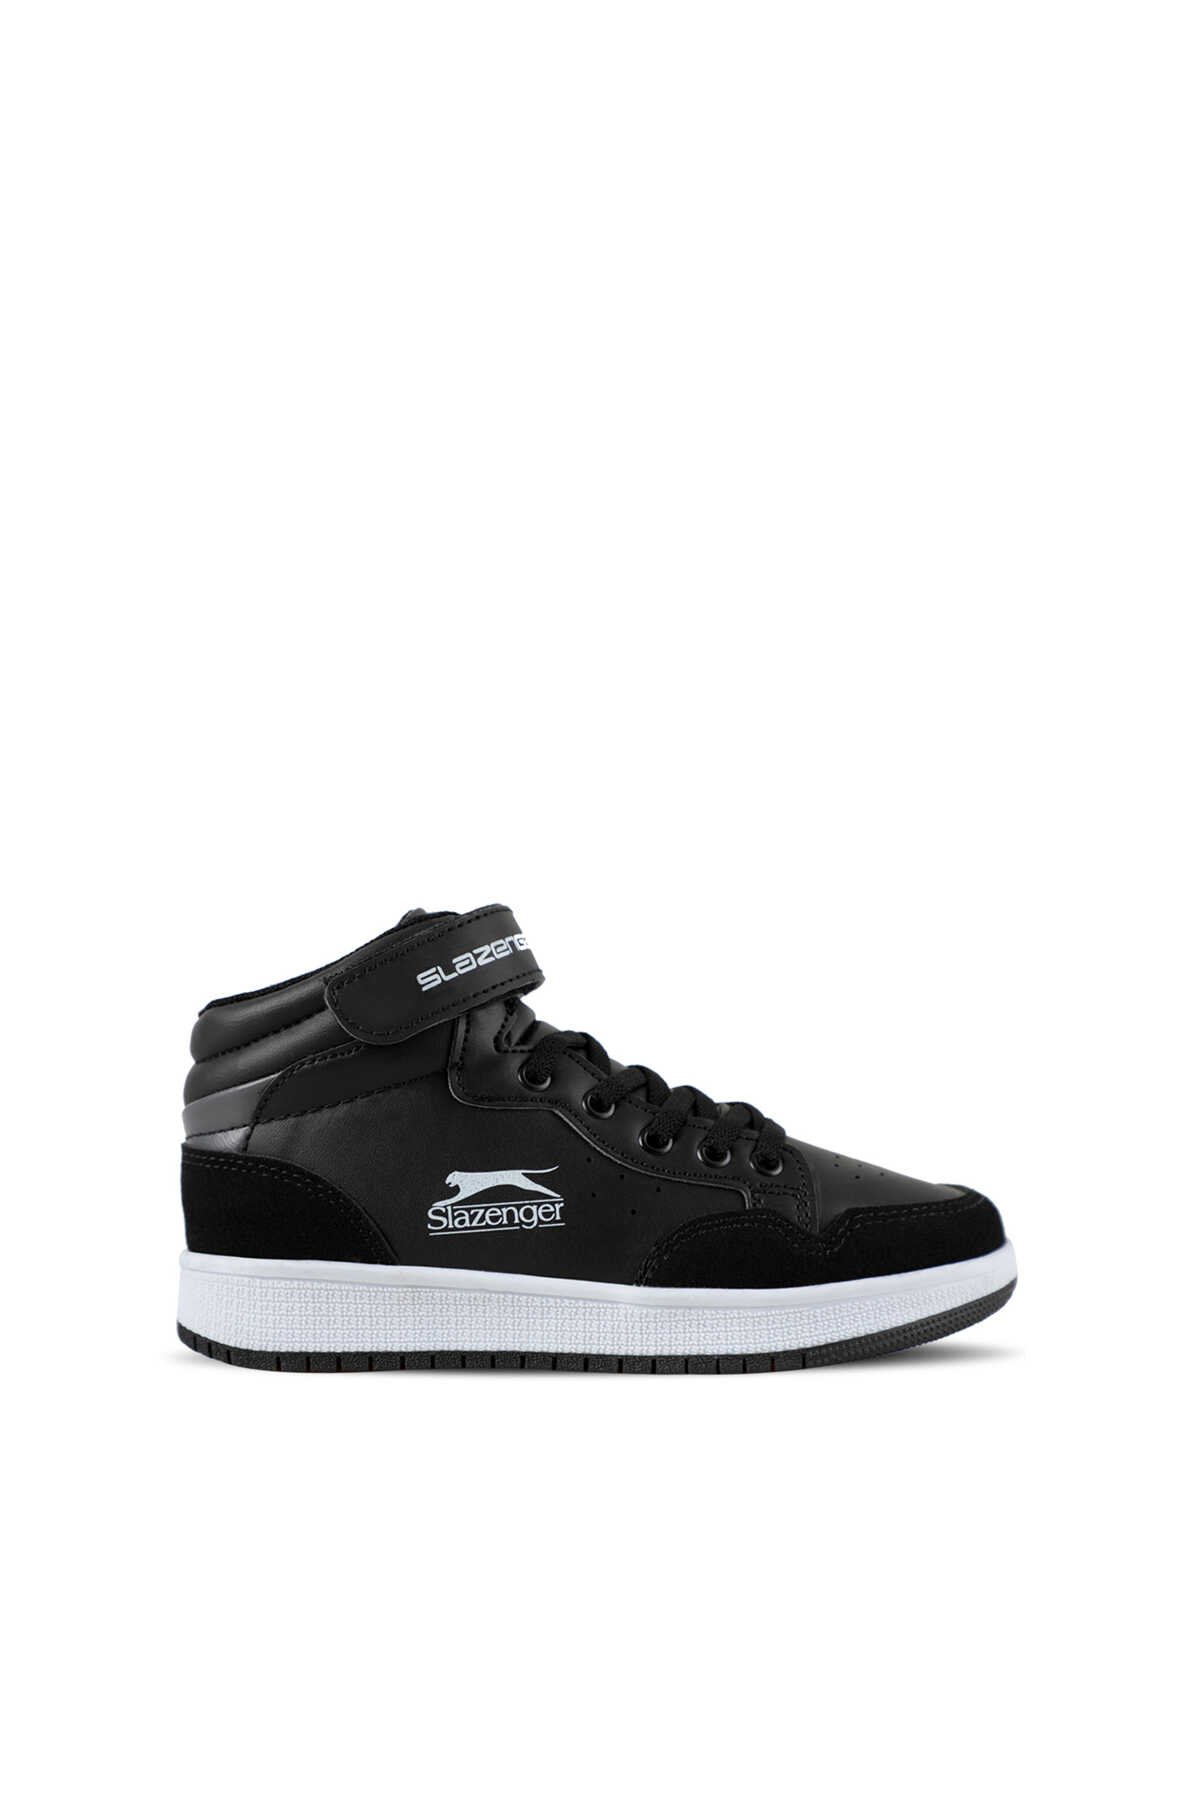 Slazenger - Slazenger PACE Sneaker Erkek Çocuk Ayakkabı Siyah / Beyaz